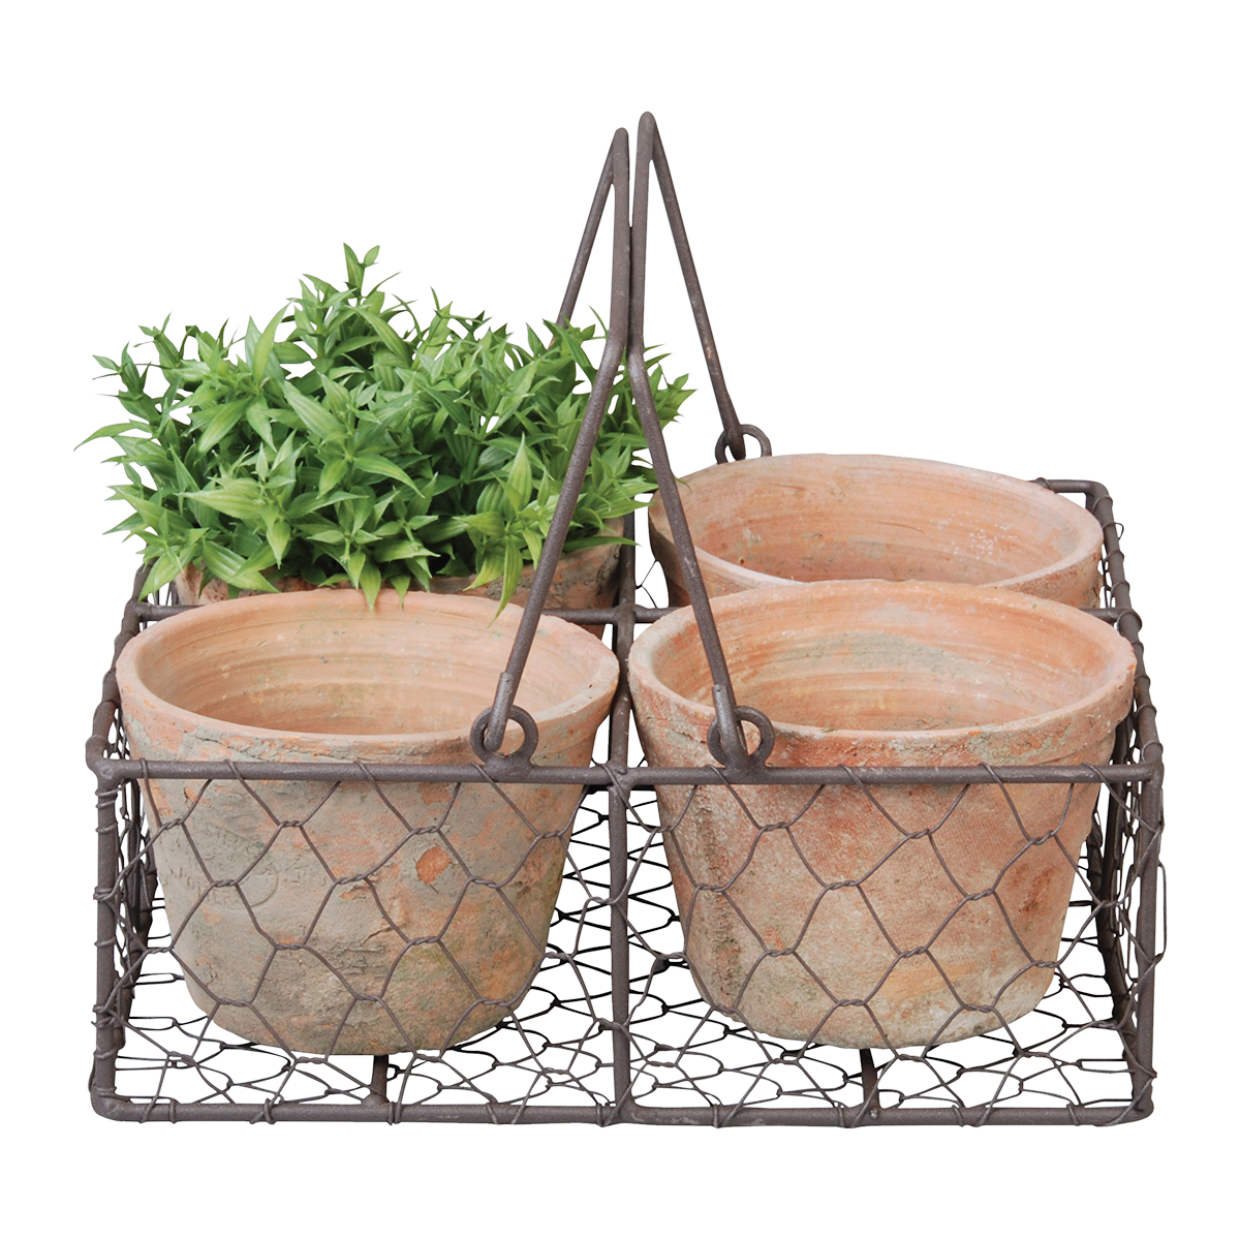 Aged Terracotta 4 Pots in Wire Basket w/ Handle